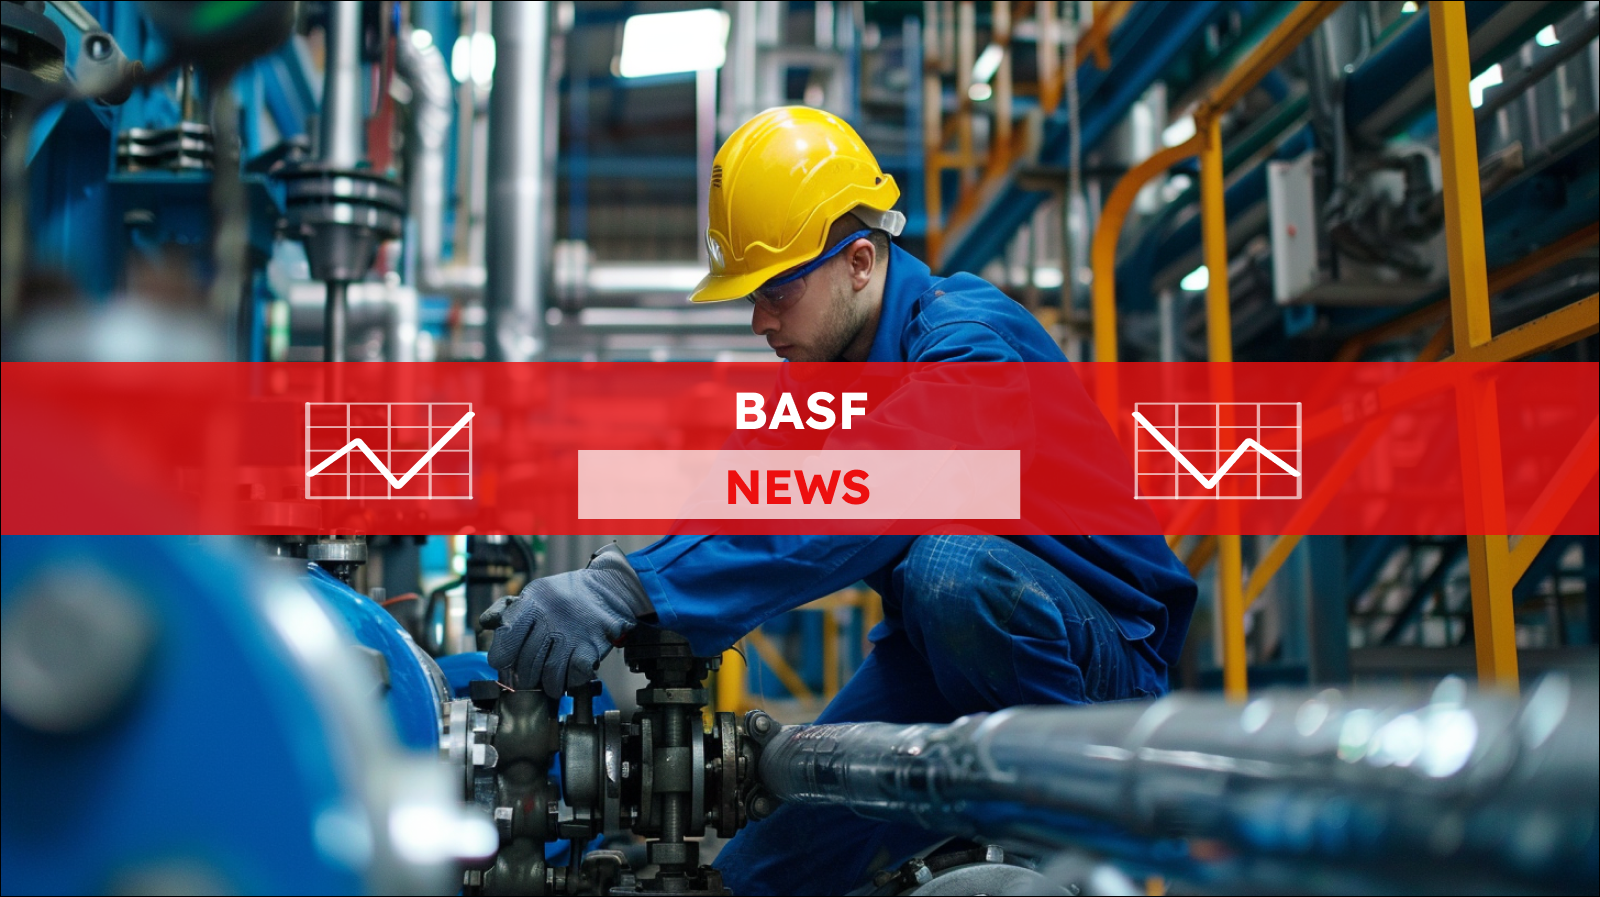 Ein Mann in blauer Arbeitskleidung und gelbem Schutzhelm, der an einer industriellen Rohrleitung arbeitet, mit einem BASF NEWS Banner